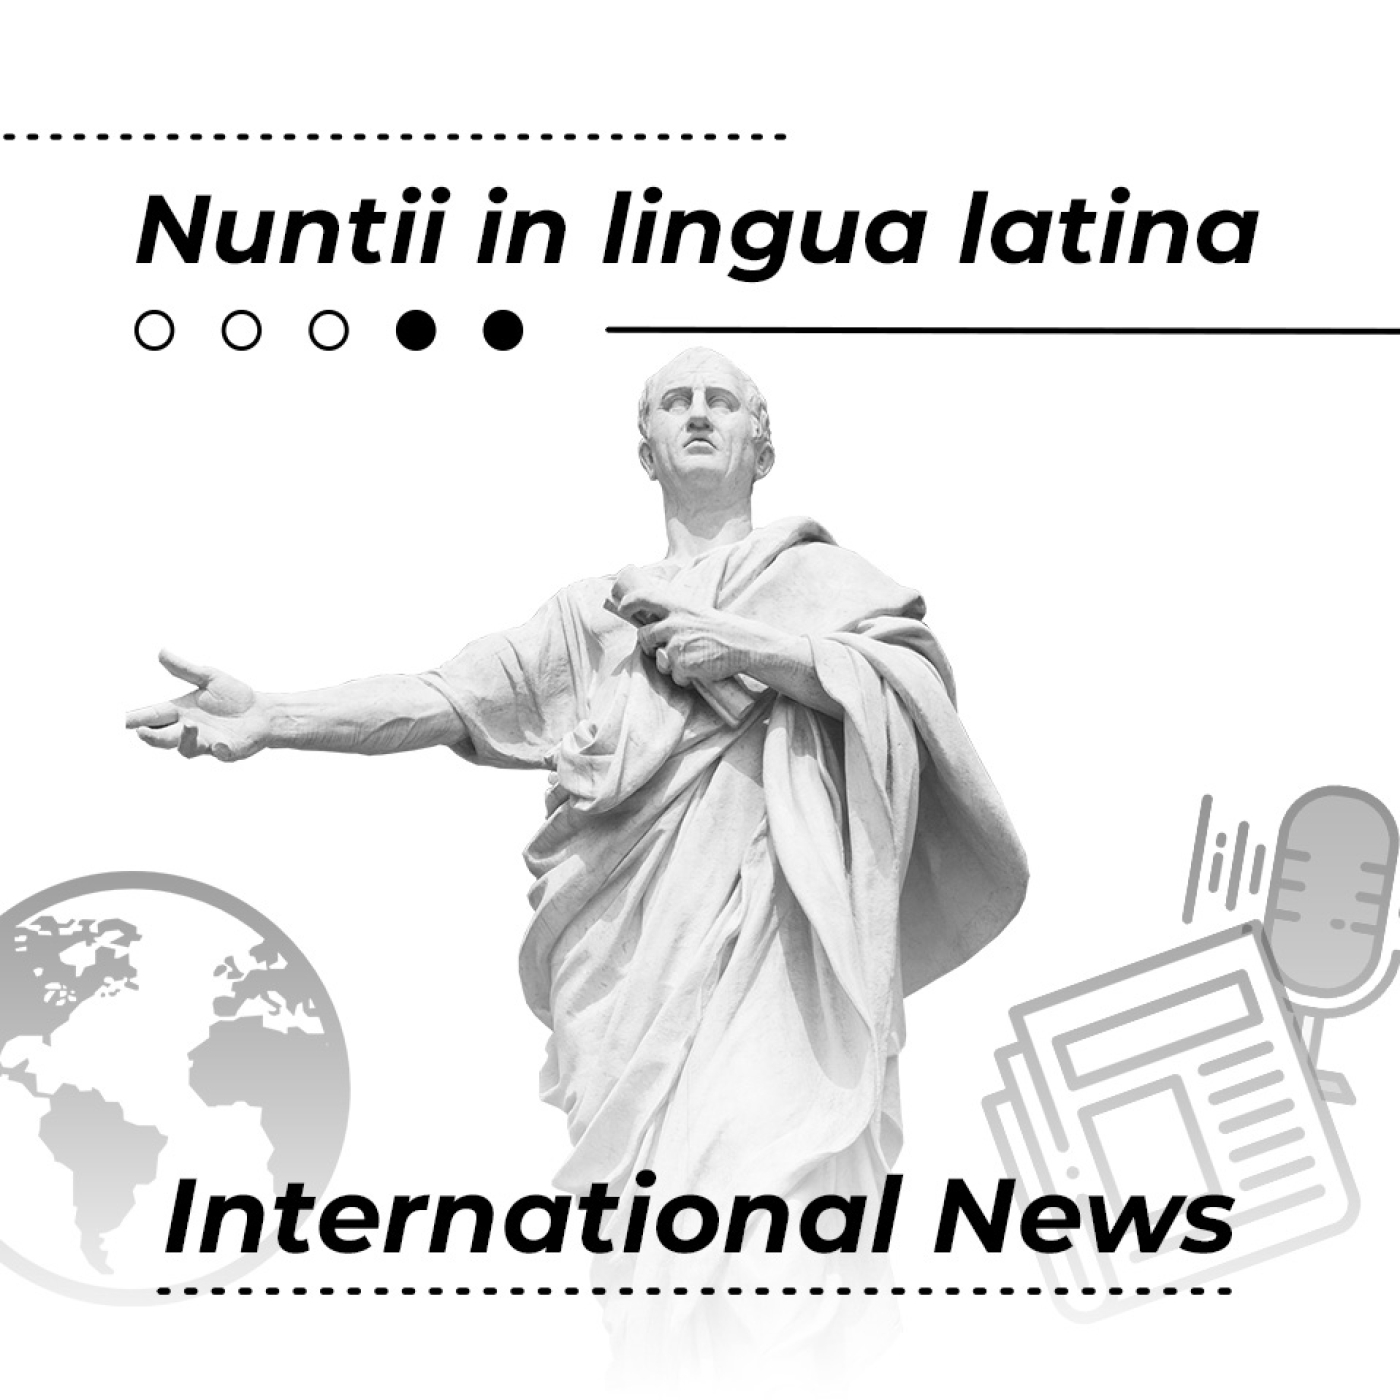 Nuntii in lingua latina E.4 T.12: INUNDATIO magna in Libya et terrae MOTUS magnum in Al Haouz, Maroco FUERUNT.